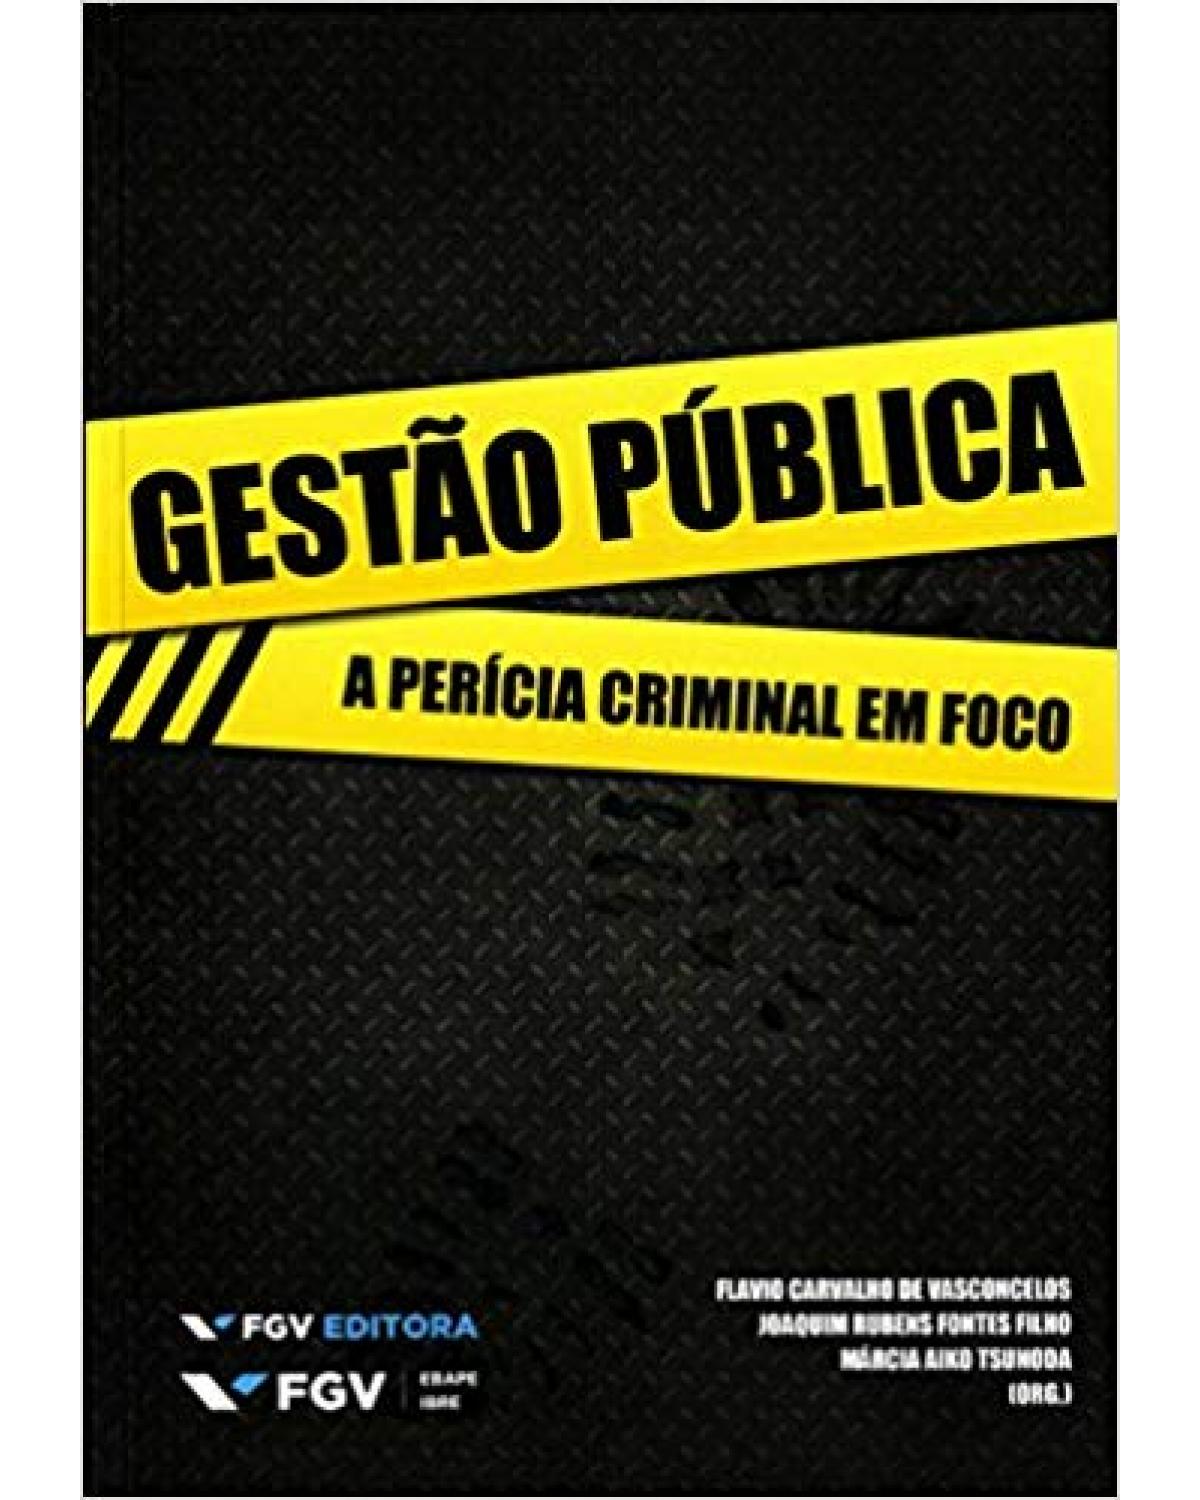 Gestão pública: A perícia criminal em foco - 1ª Edição